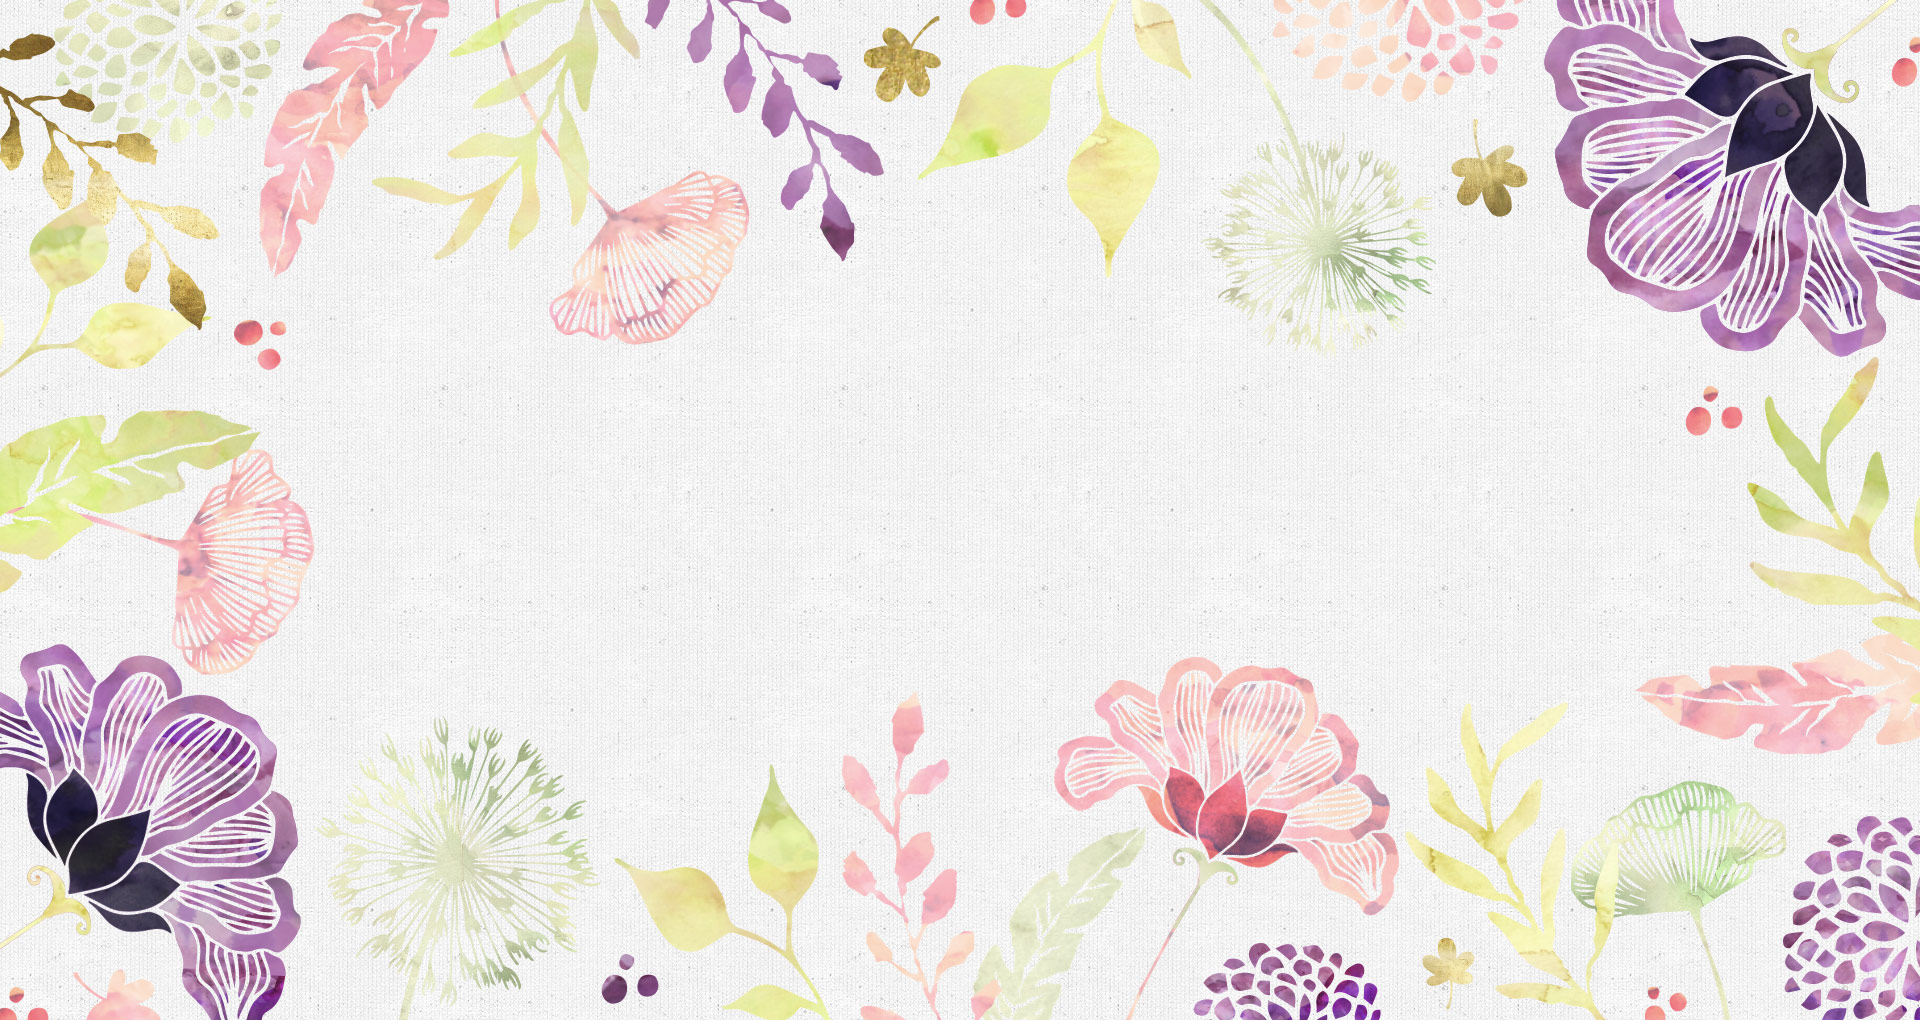 Digital Roundup: Floral Desktop Wallpaper for Spring